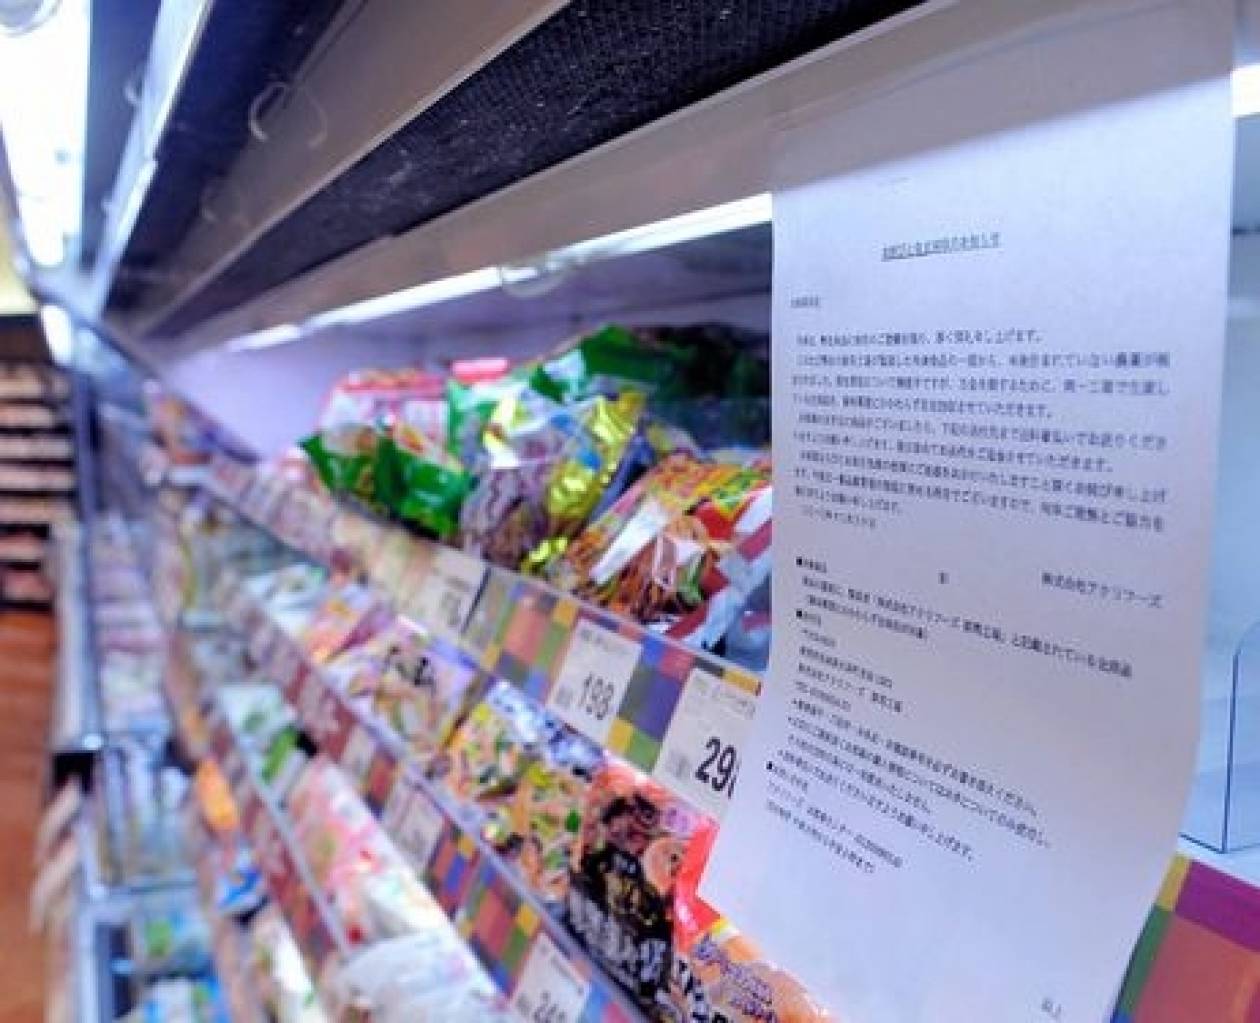 Ιαπωνία: Τοξικό φυτοφάρμακο εντοπίστηκε σε κατεψυγμένα προϊόντα